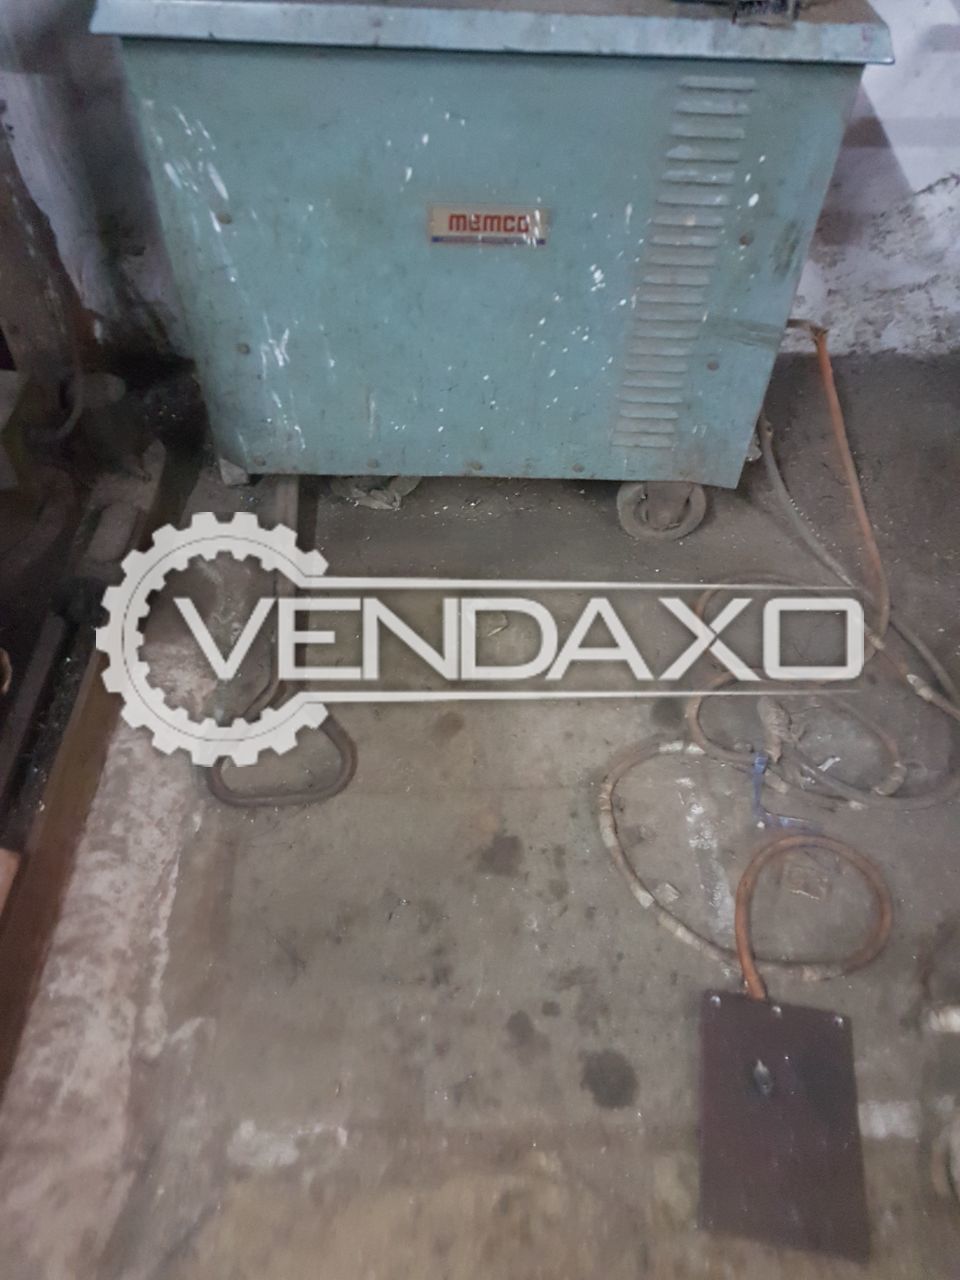 memco welding machine